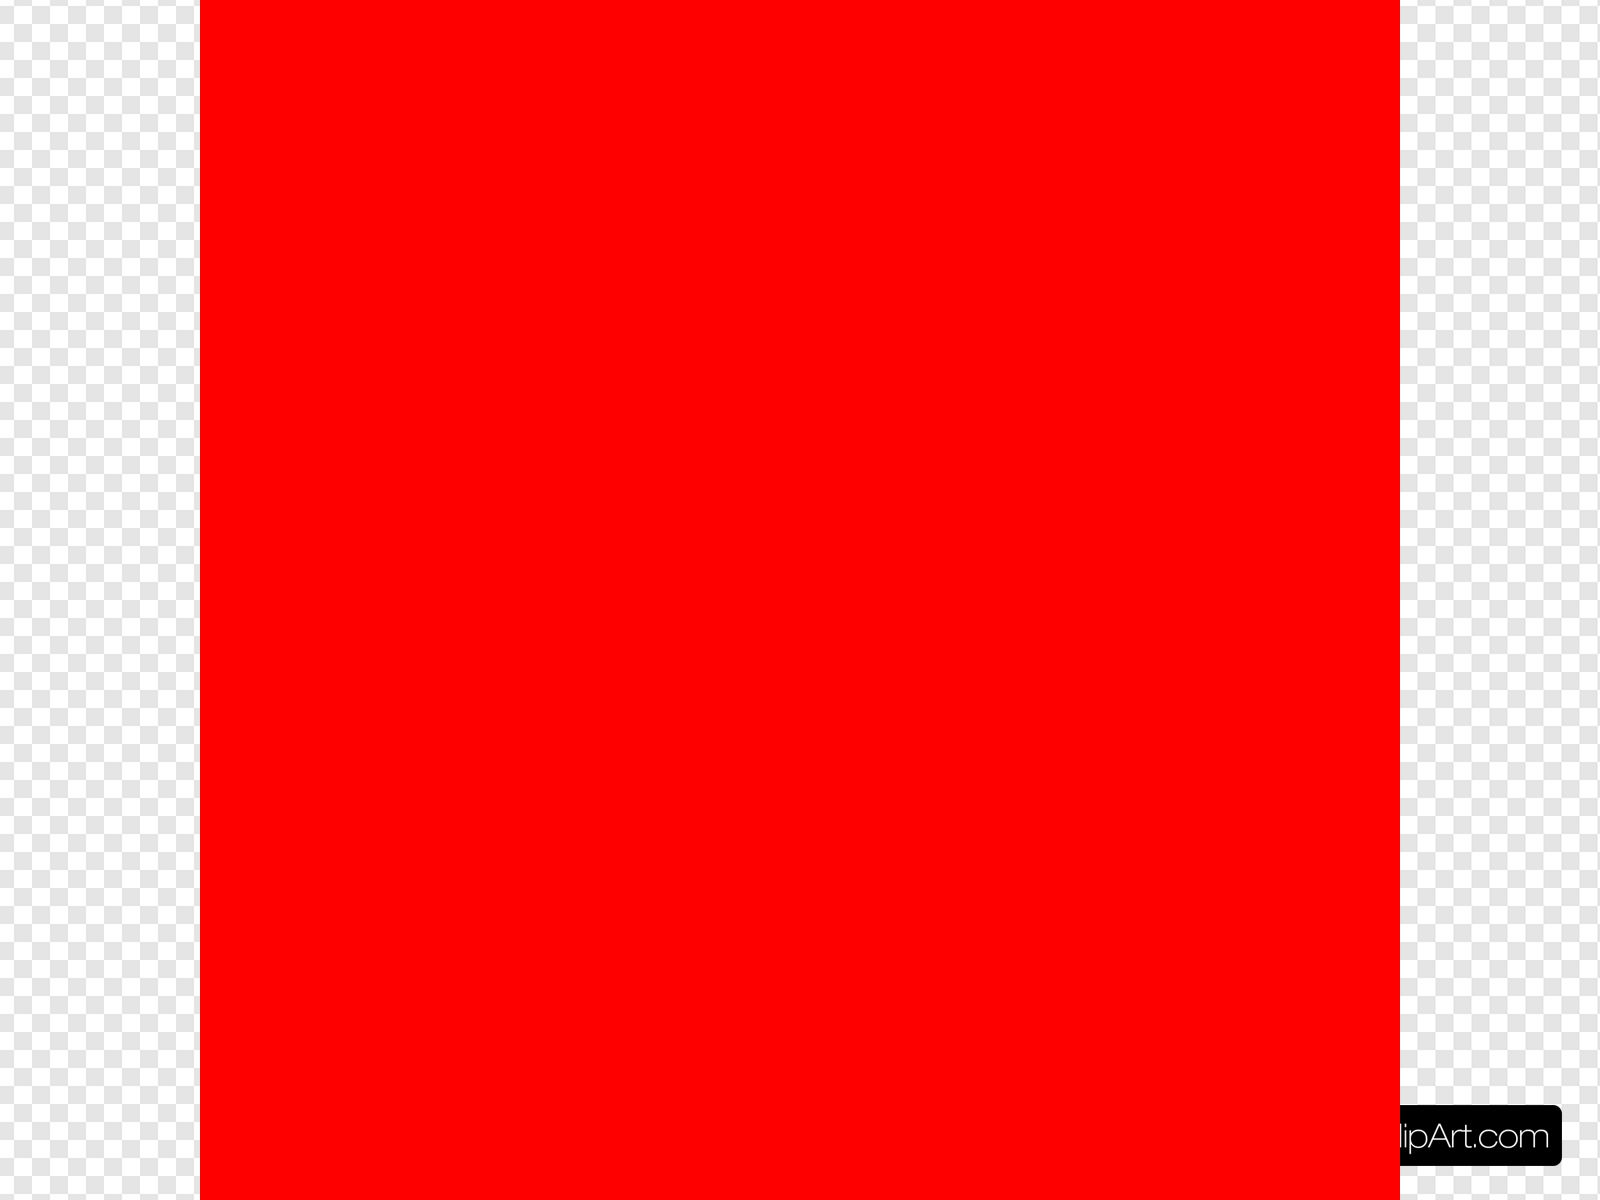 Красный квадрат на прозрачном фоне. Красный квадратик без фона. Красный квадрат на белом фоне. Маленький красный квадрат. Сайт красный квадрат